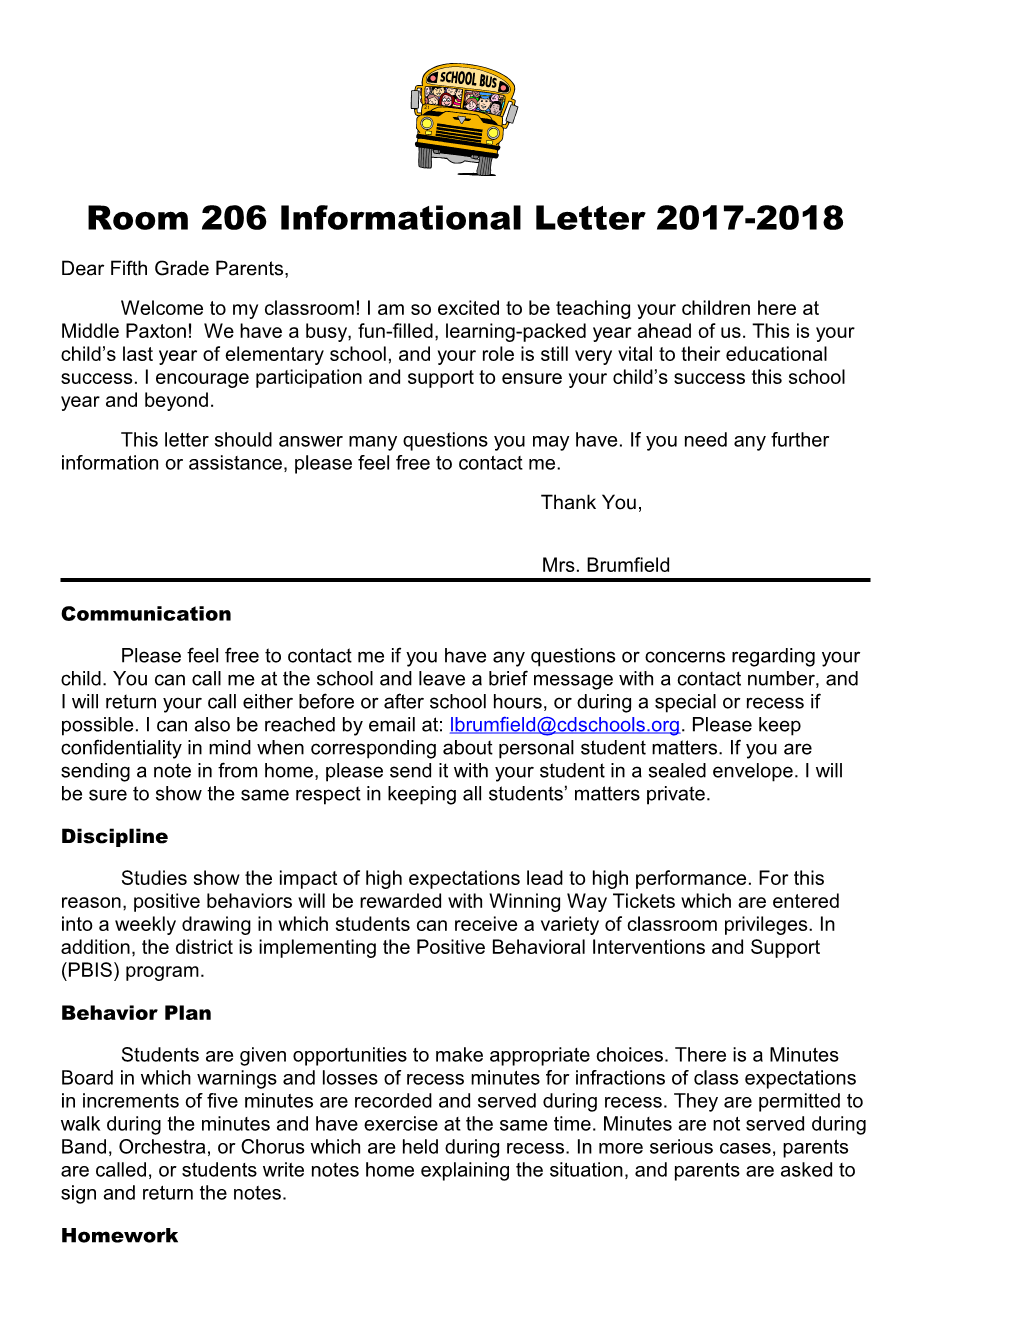 Room 208 Informational Letter